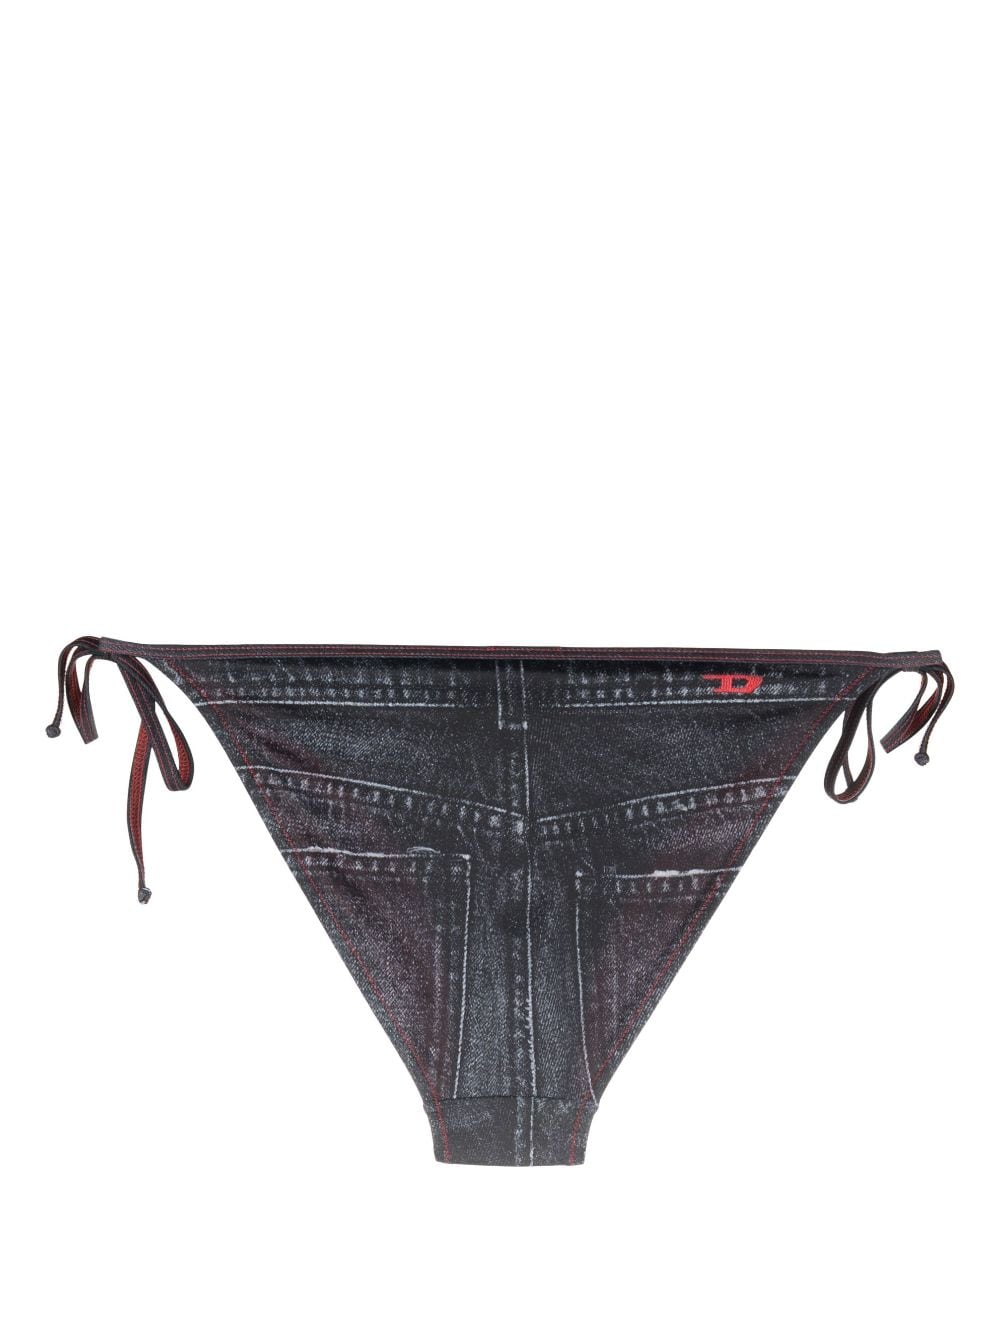 Diesel jeans-print side-tie bikini bottoms - Zwart